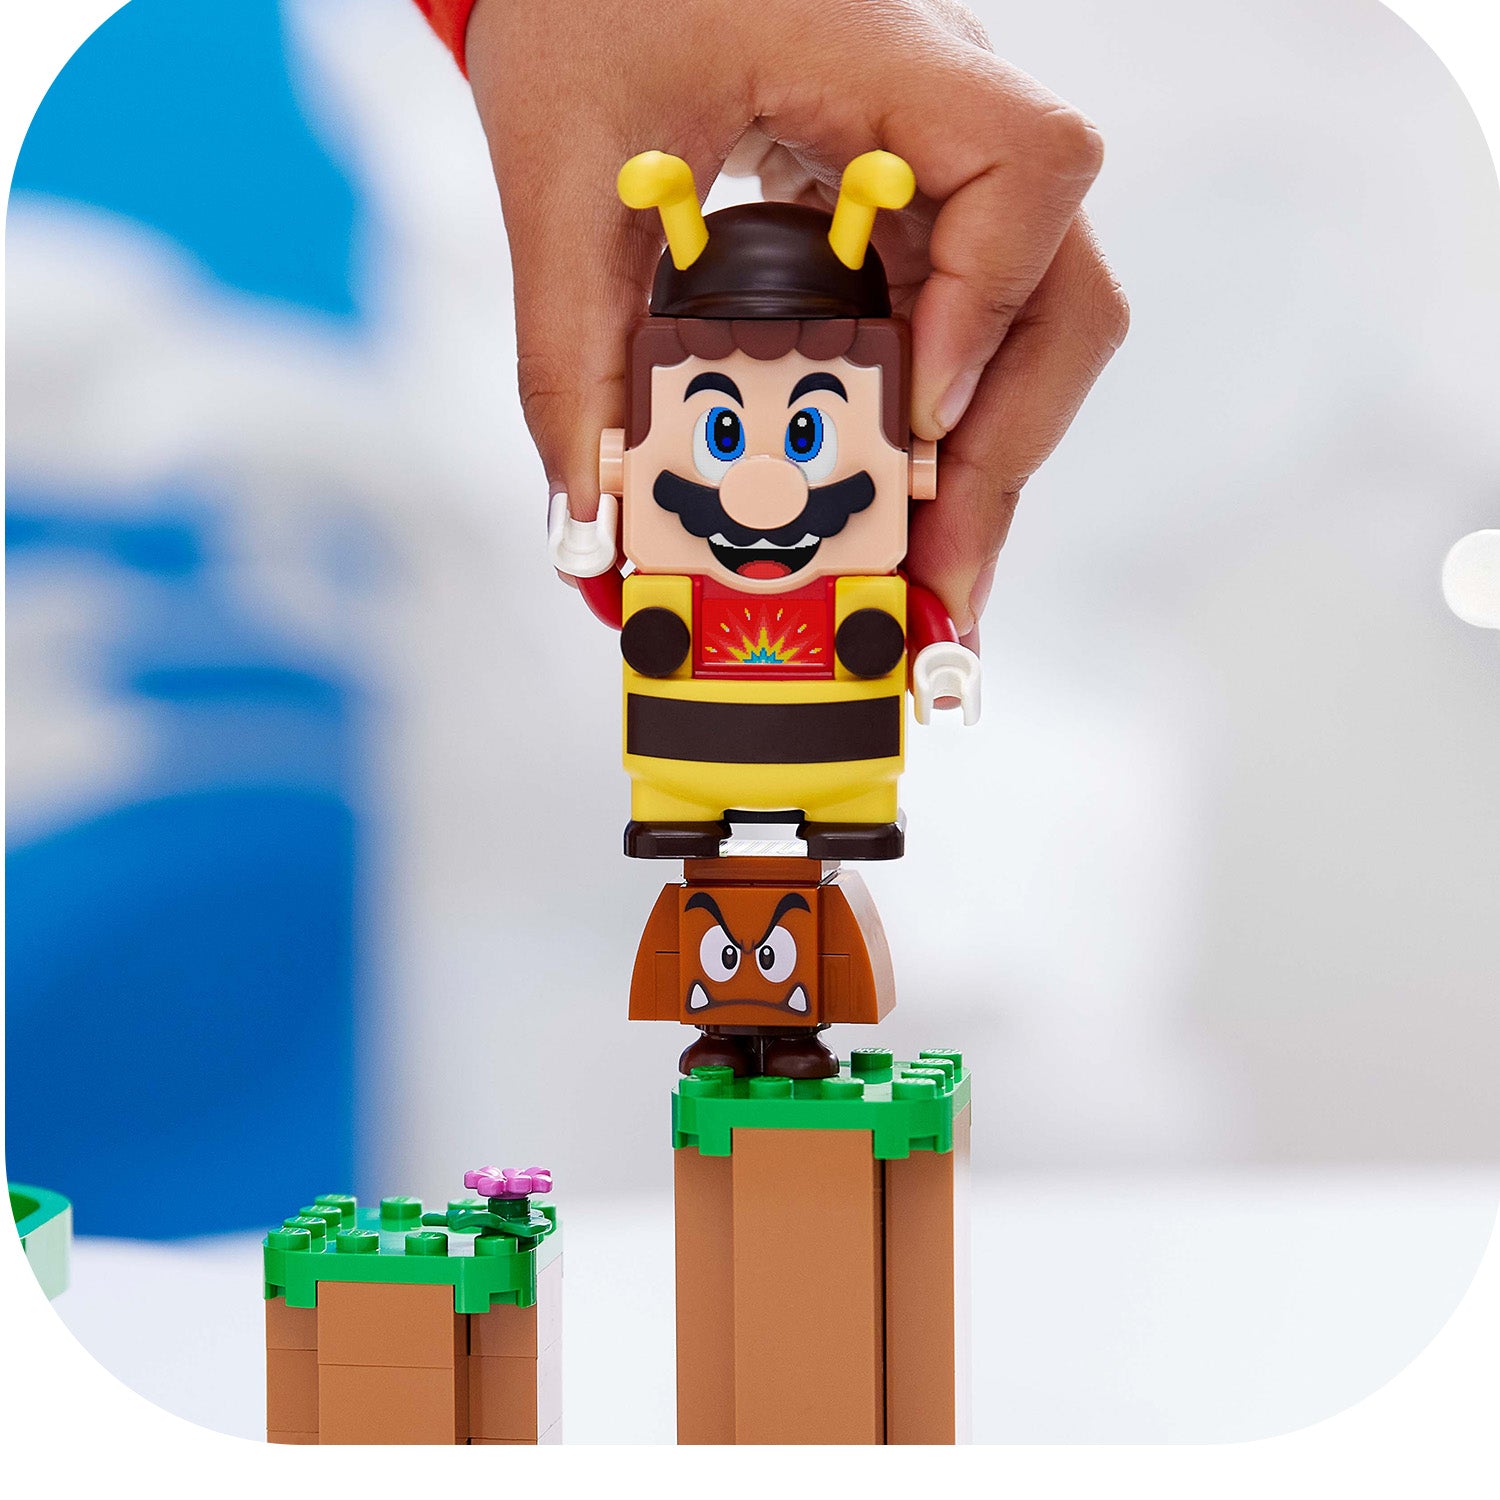 Paket za energiju – pčela Mario